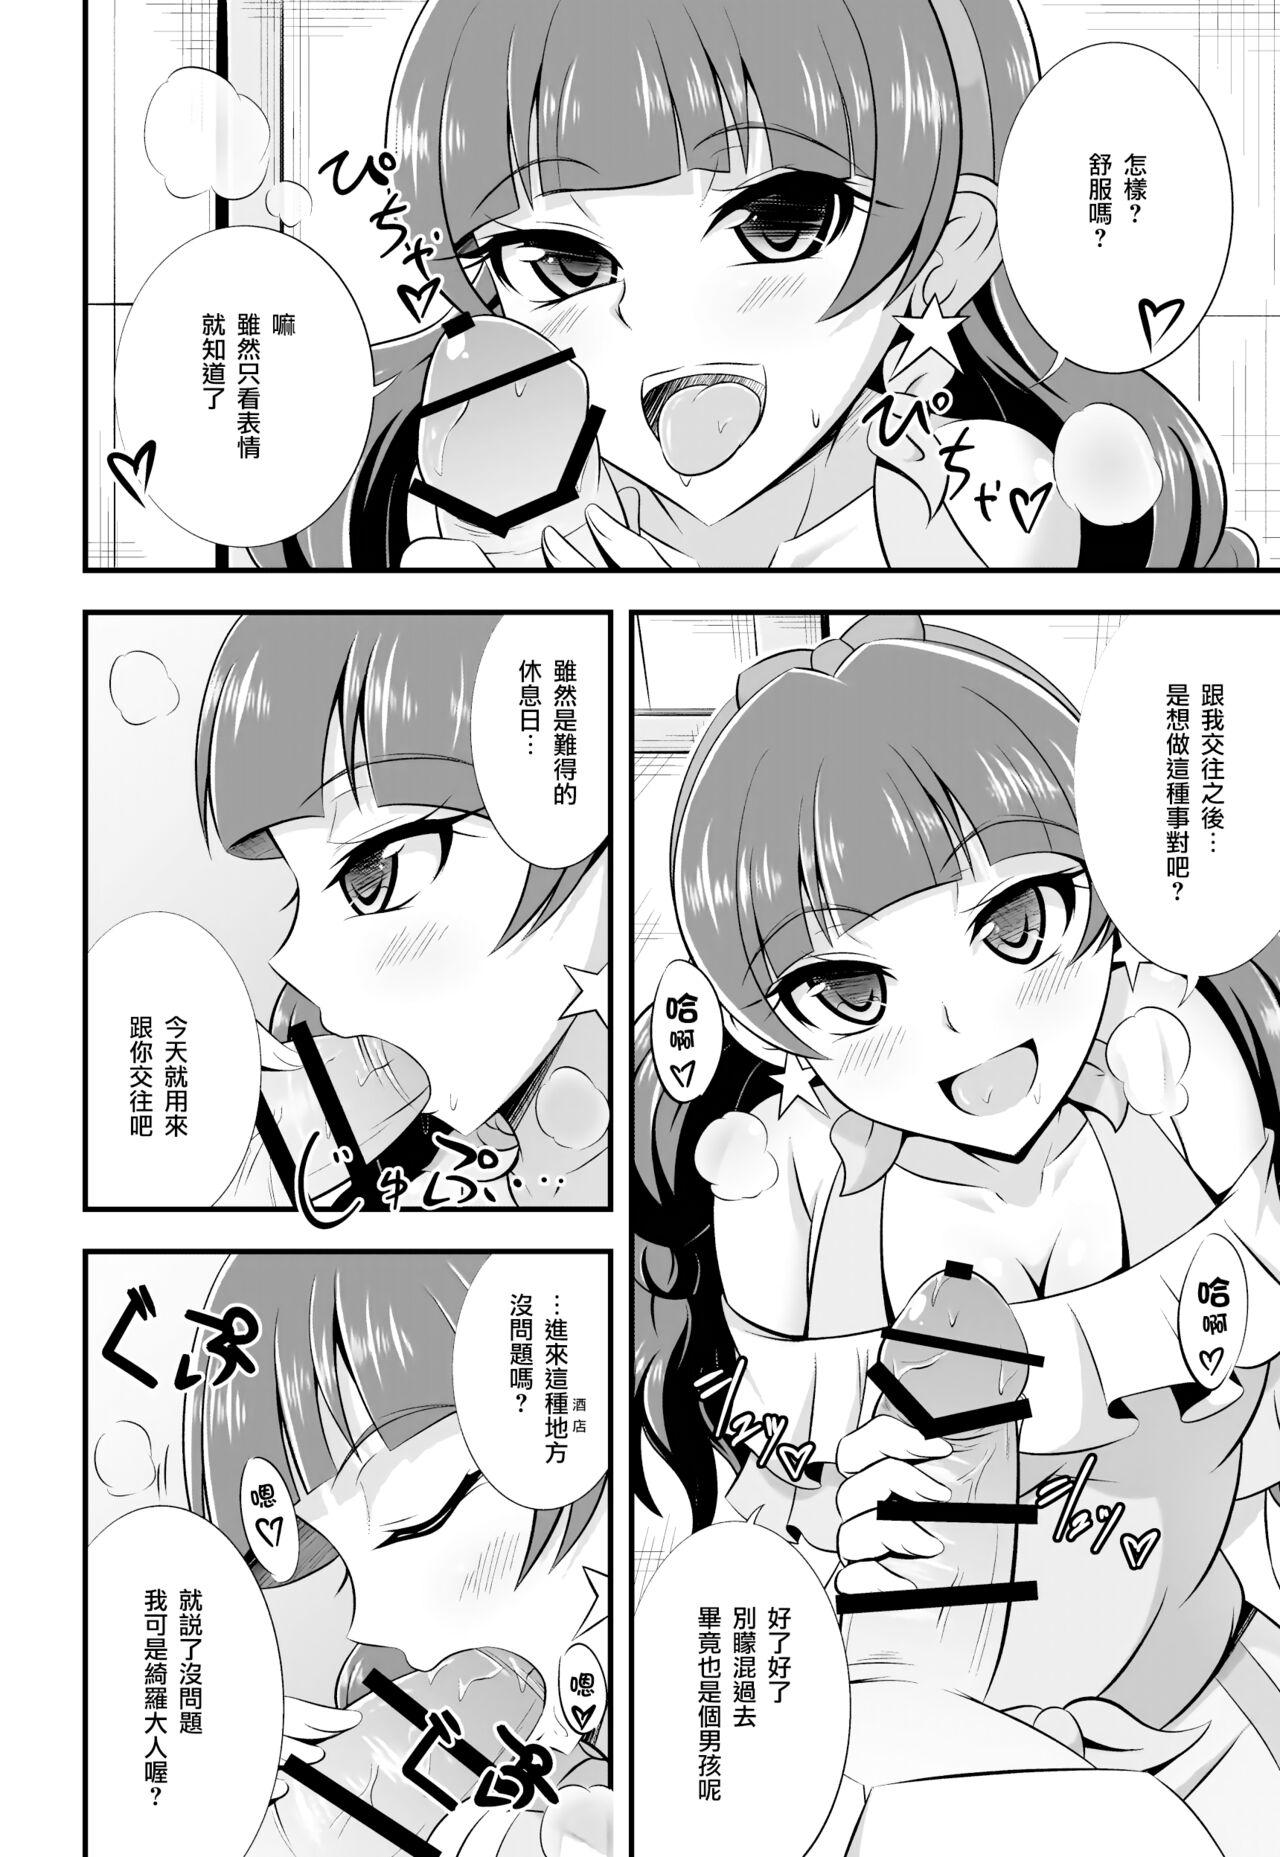 Female Domination Kira, Hoshi no Gotoku. - Go princess precure Zorra - Page 5